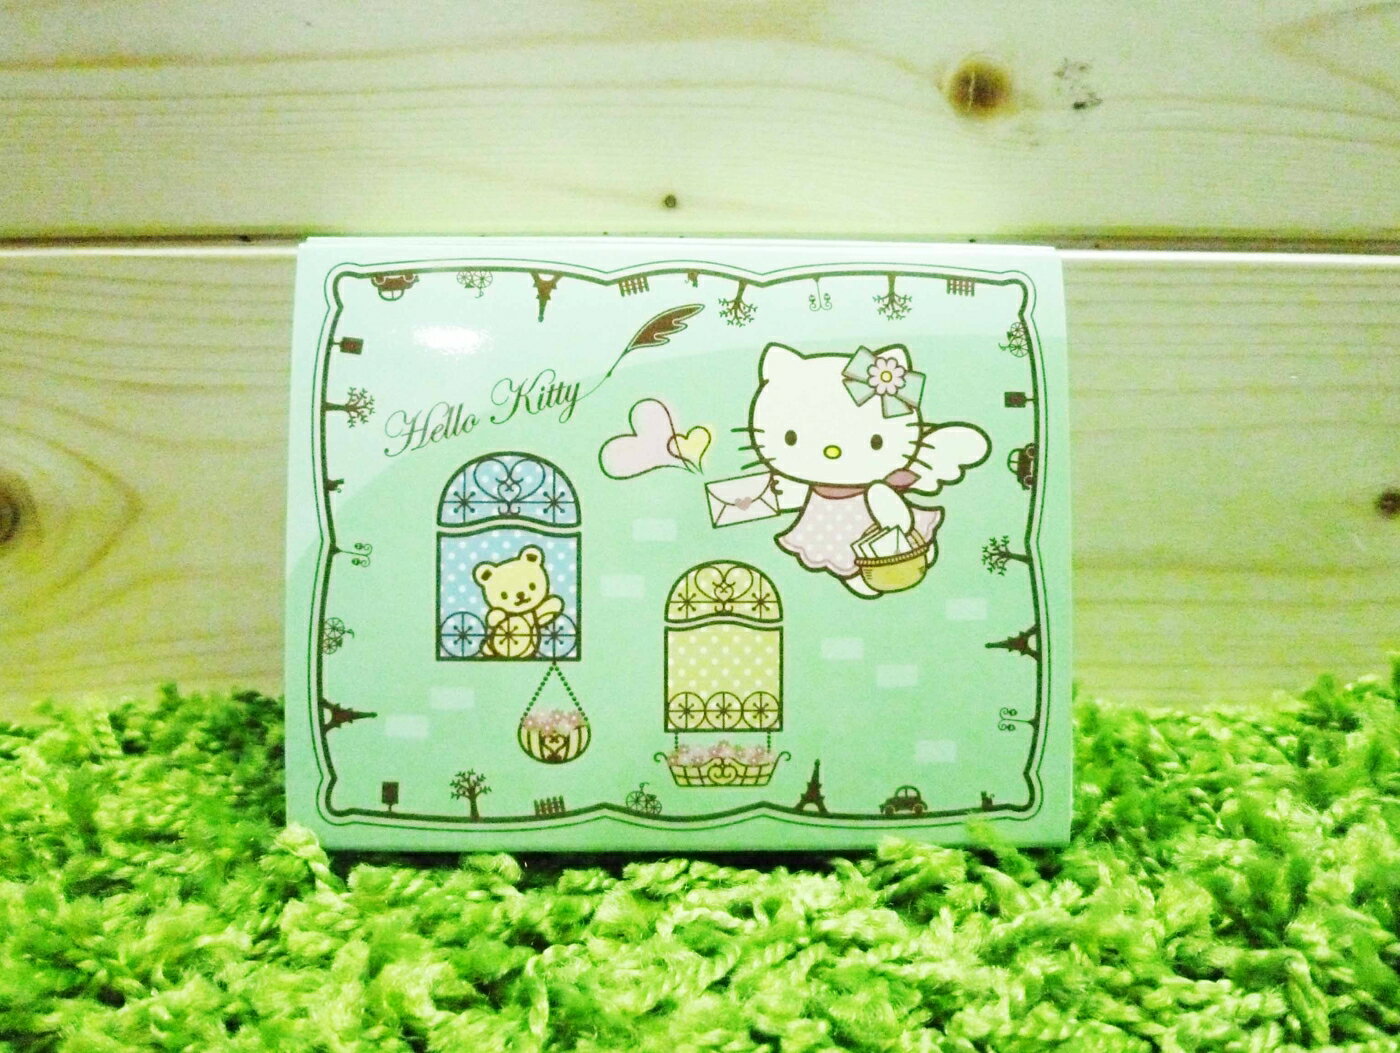 【震撼精品百貨】Hello Kitty 凱蒂貓 便條紙附整理盒-綠天使【共1款】 震撼日式精品百貨